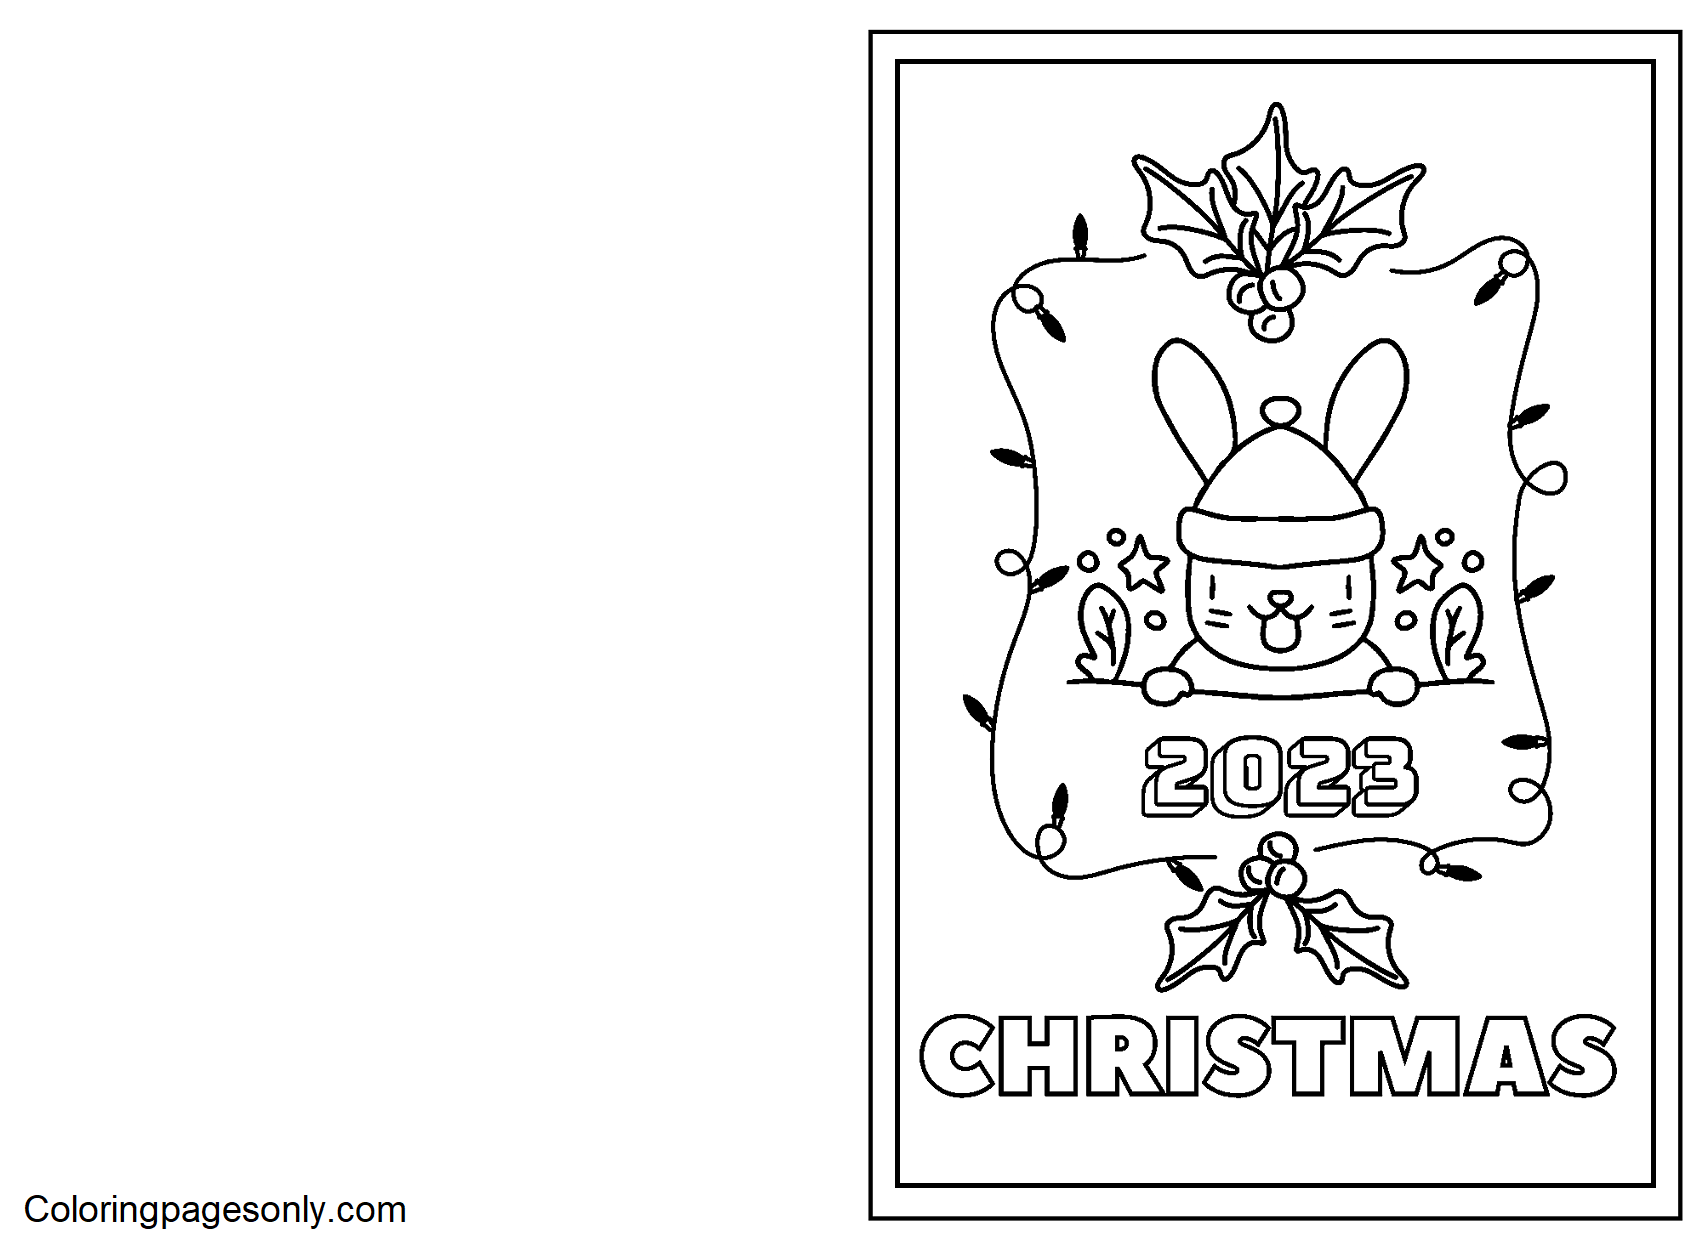 Tarjeta de Navidad 2023 de Navidad 2023